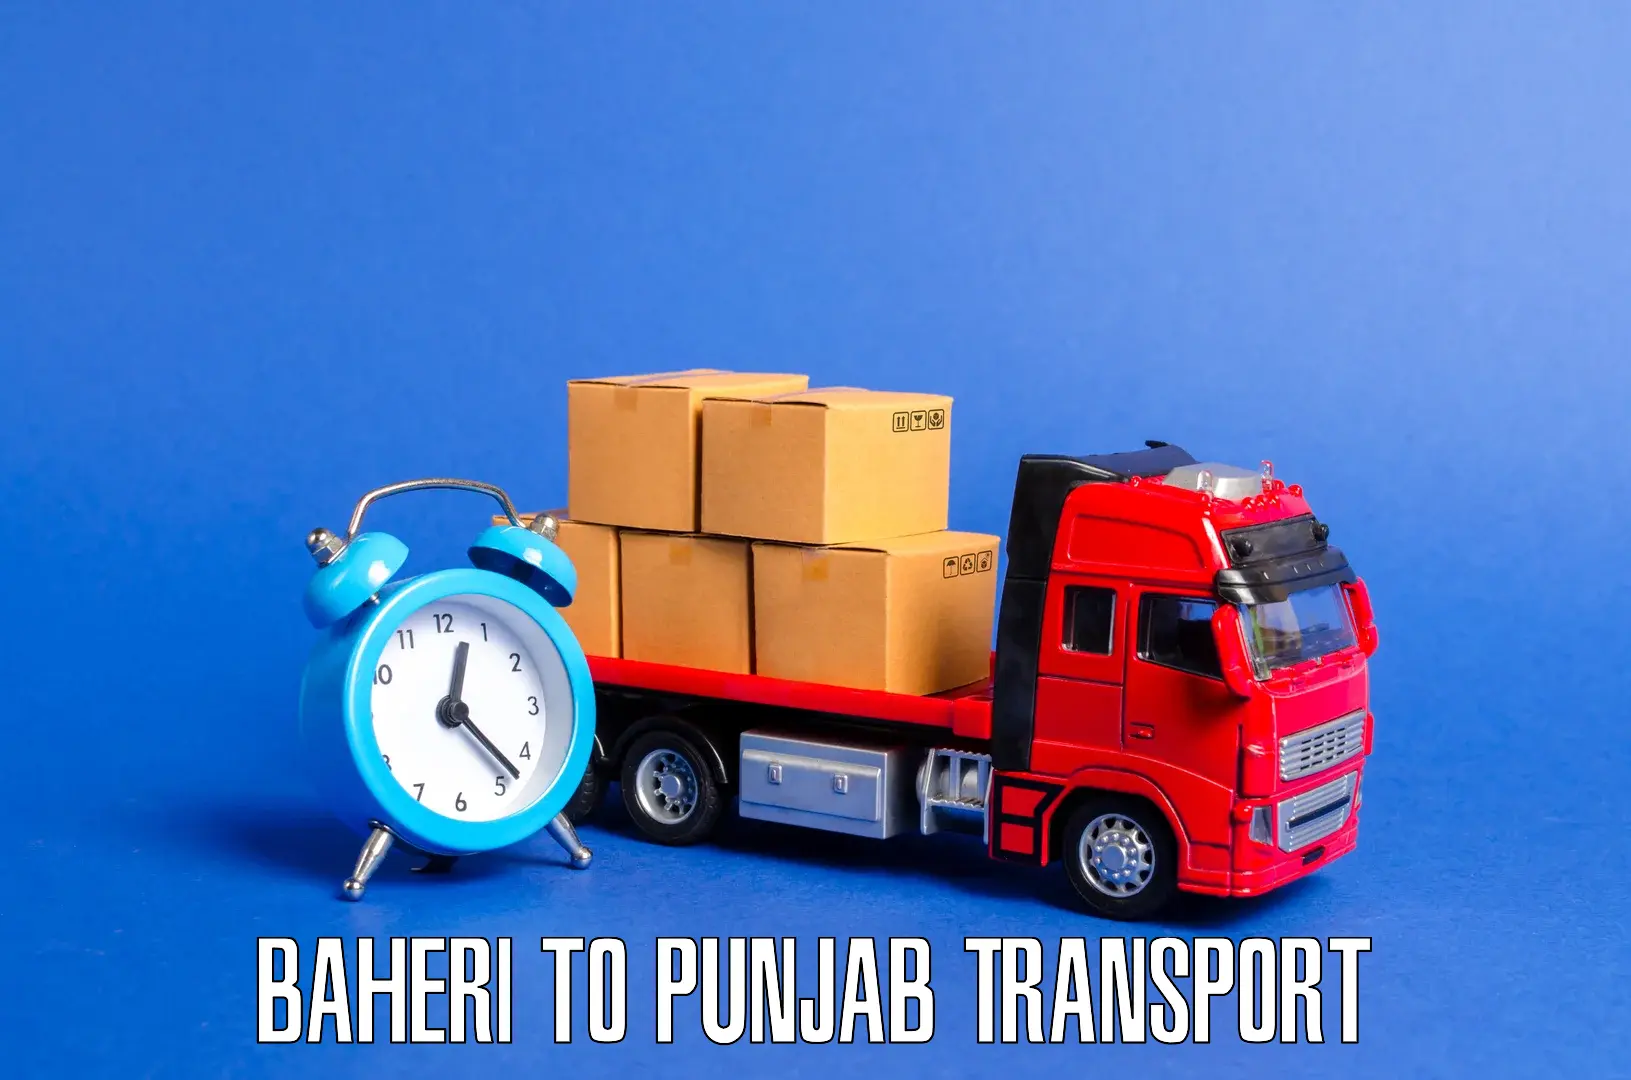 Land transport services Baheri to Punjab